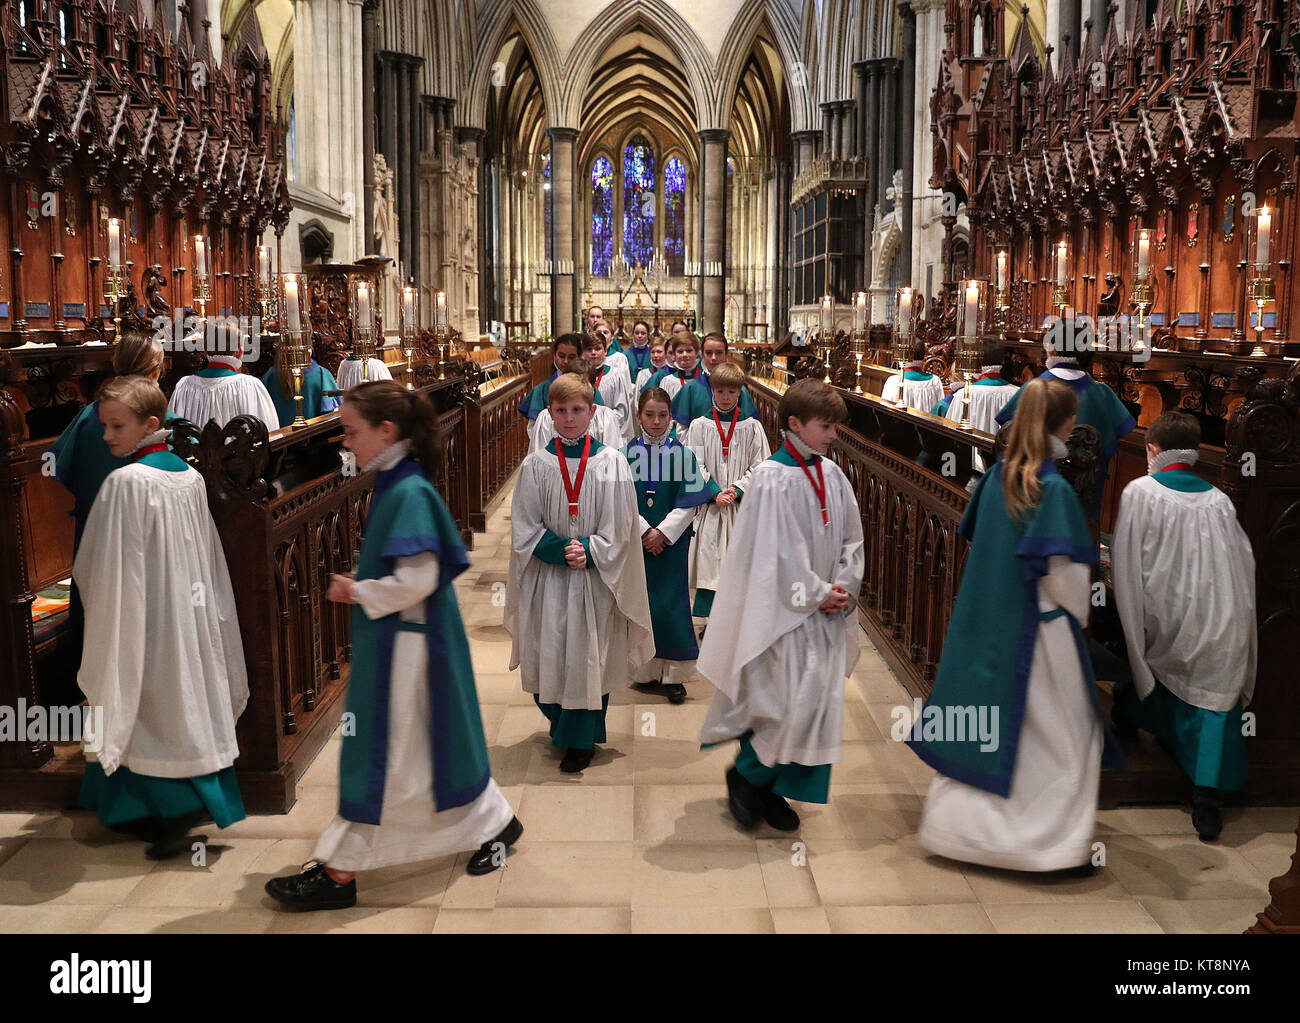 Les choristes de la cathédrale de Salisbury école pendant un photocall à la cathédrale de Salisbury avant leurs spectacles de Noël, qui va les voir chanter 8 grands services au cours des 4 jours jusqu'à 10 000 personnes. Banque D'Images